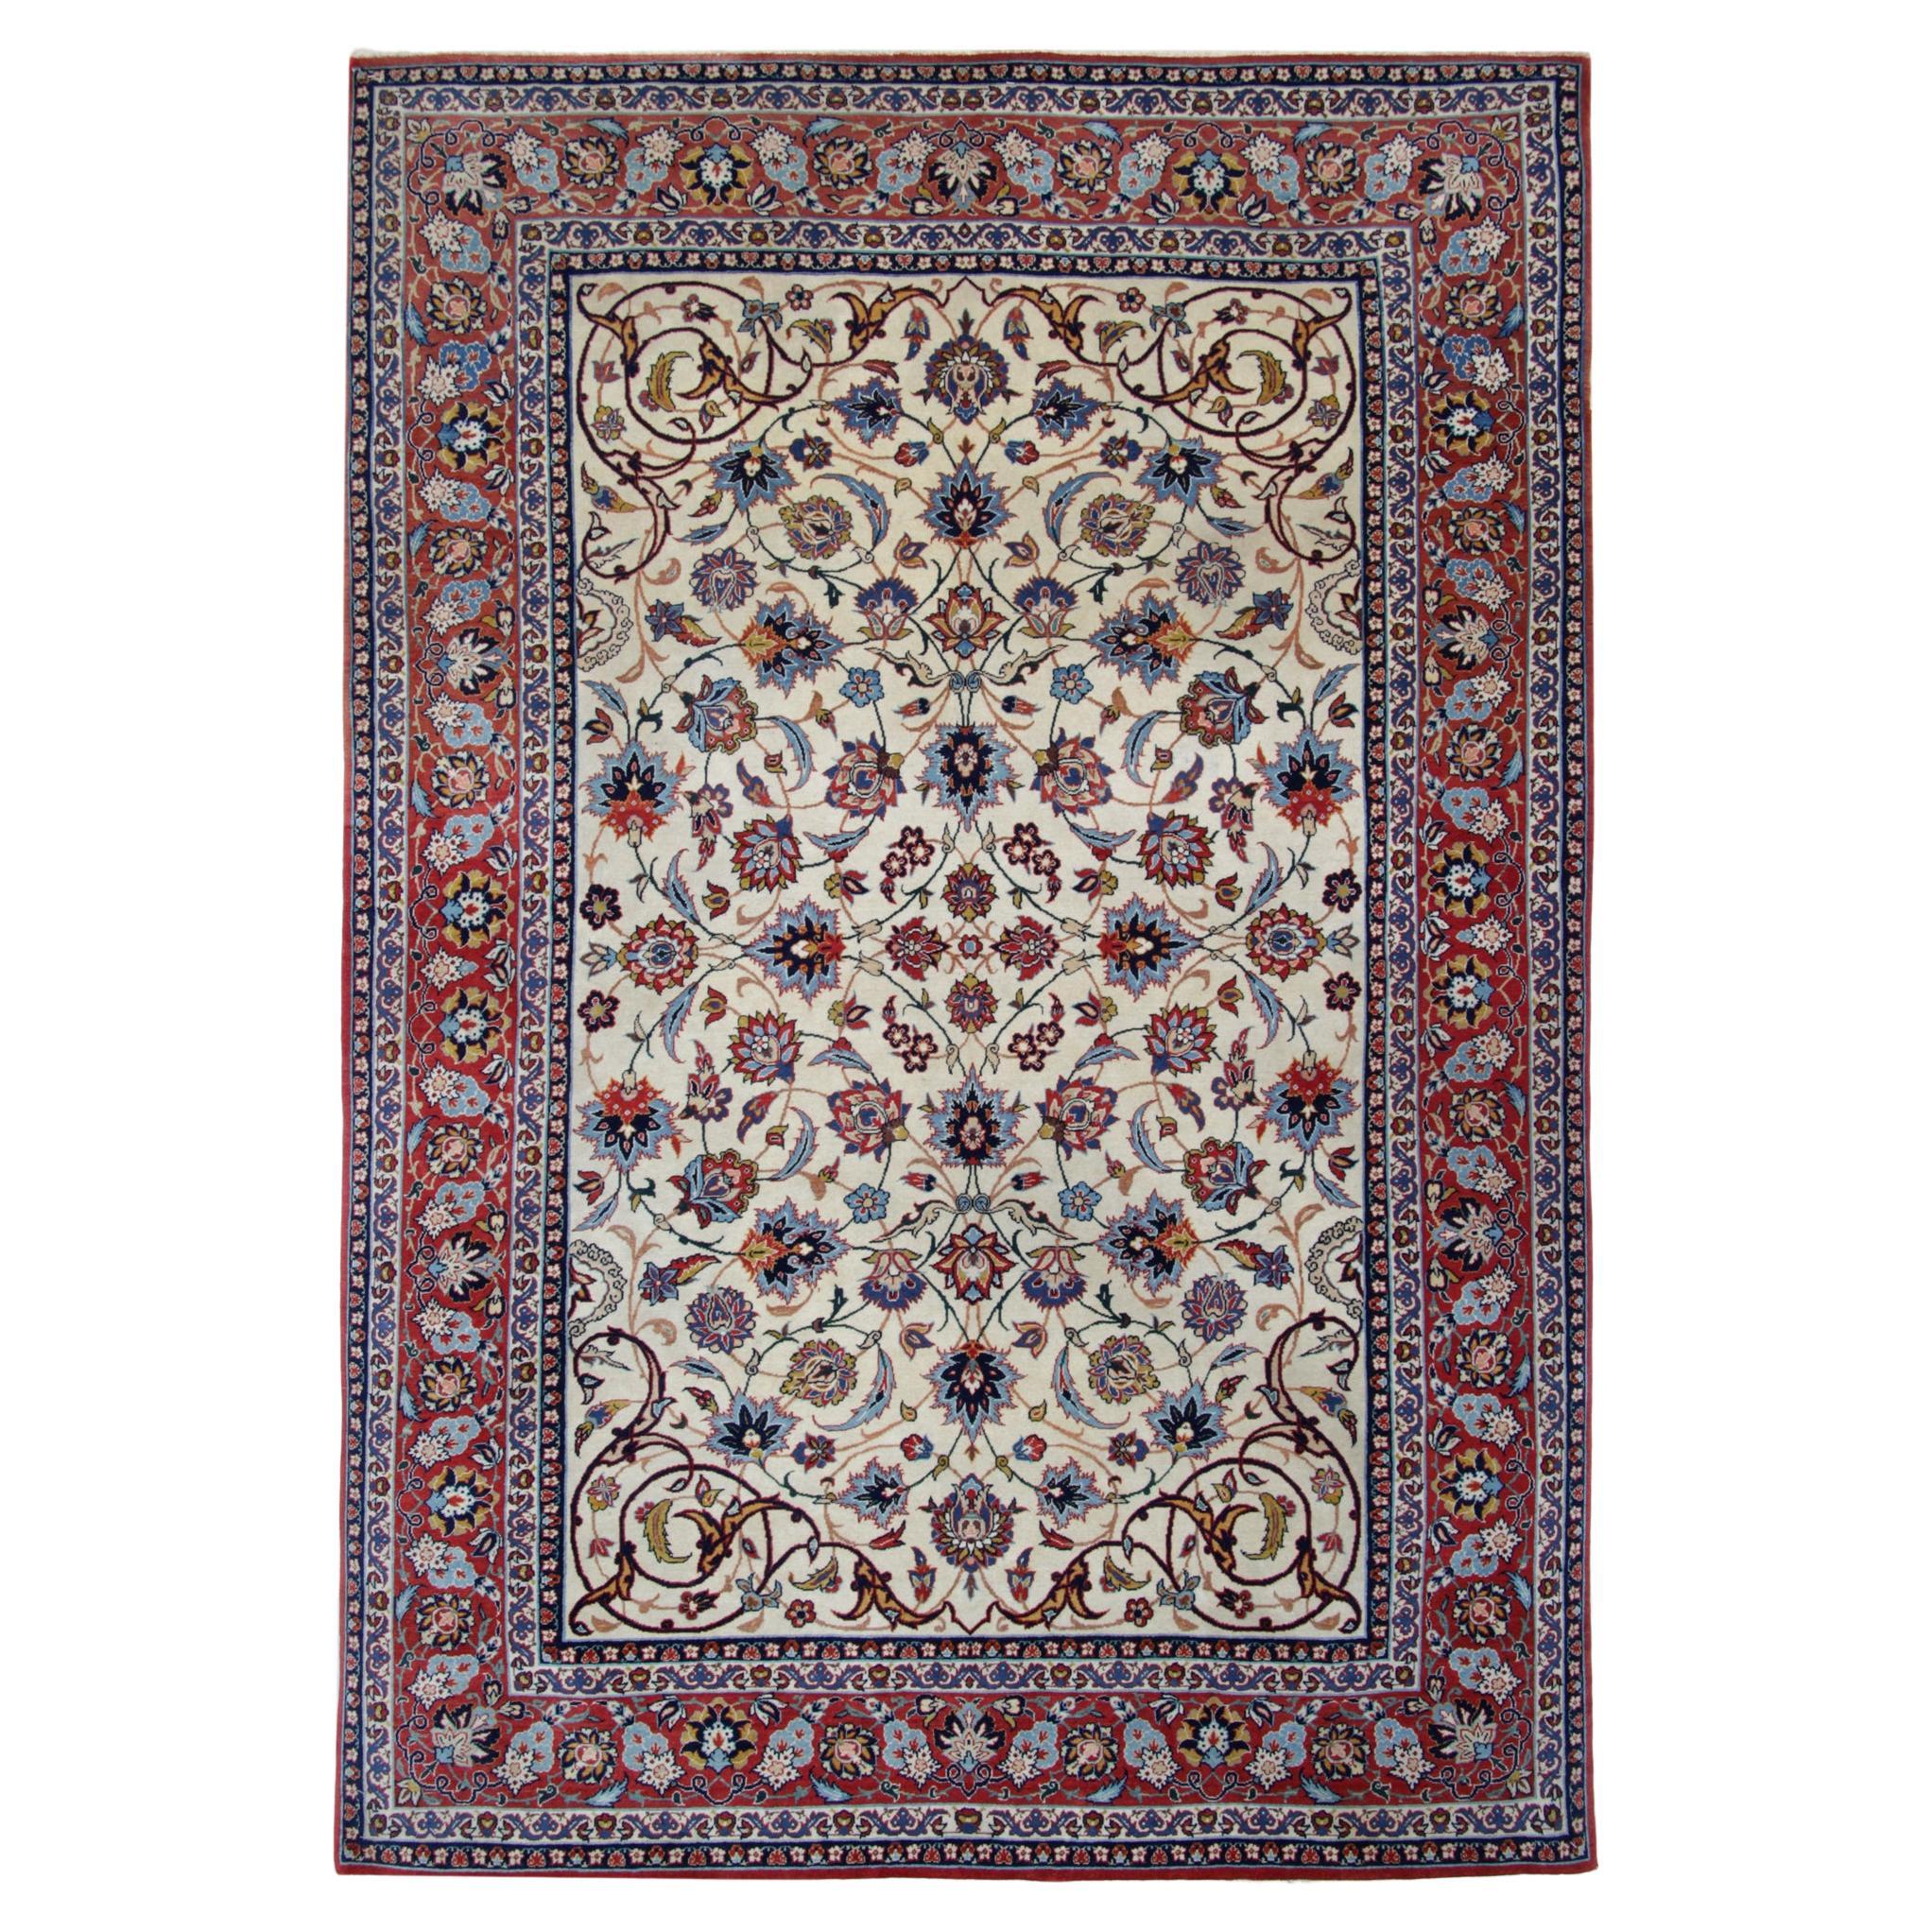 Handgewebter orientalischer Teppich in Blau, Rot und Creme, Vintage, Teppich mit Blumenmuster 206x139cm  im Angebot